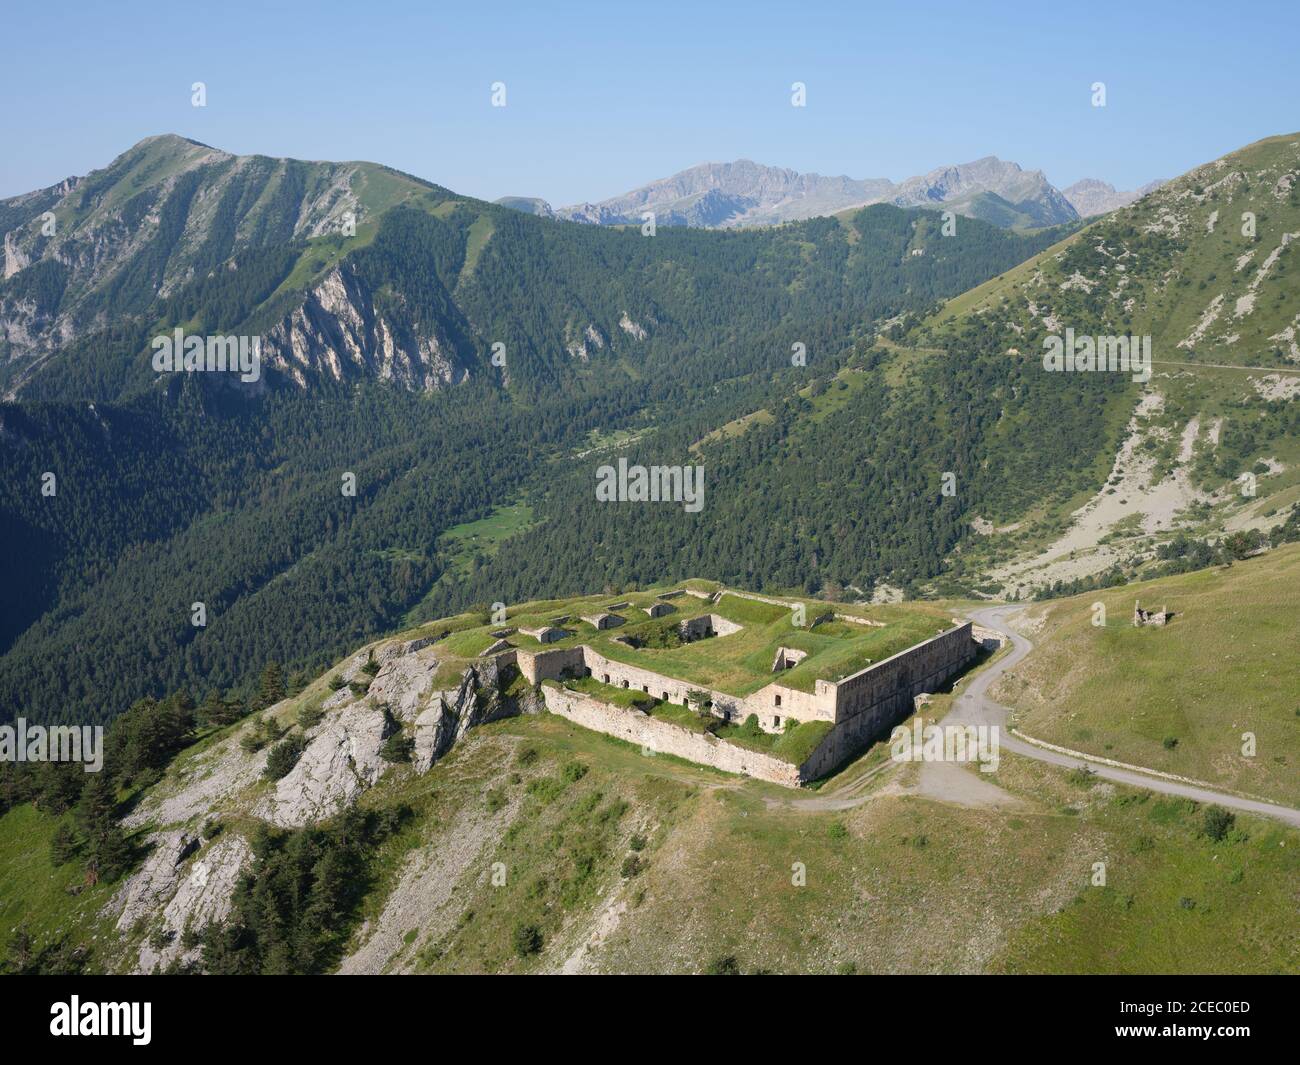 VUE AÉRIENNE.Fort de la Marguerie, une ancienne fortification militaire près du Col de Tende.Tende, Alpes-Maritimes, France. Banque D'Images